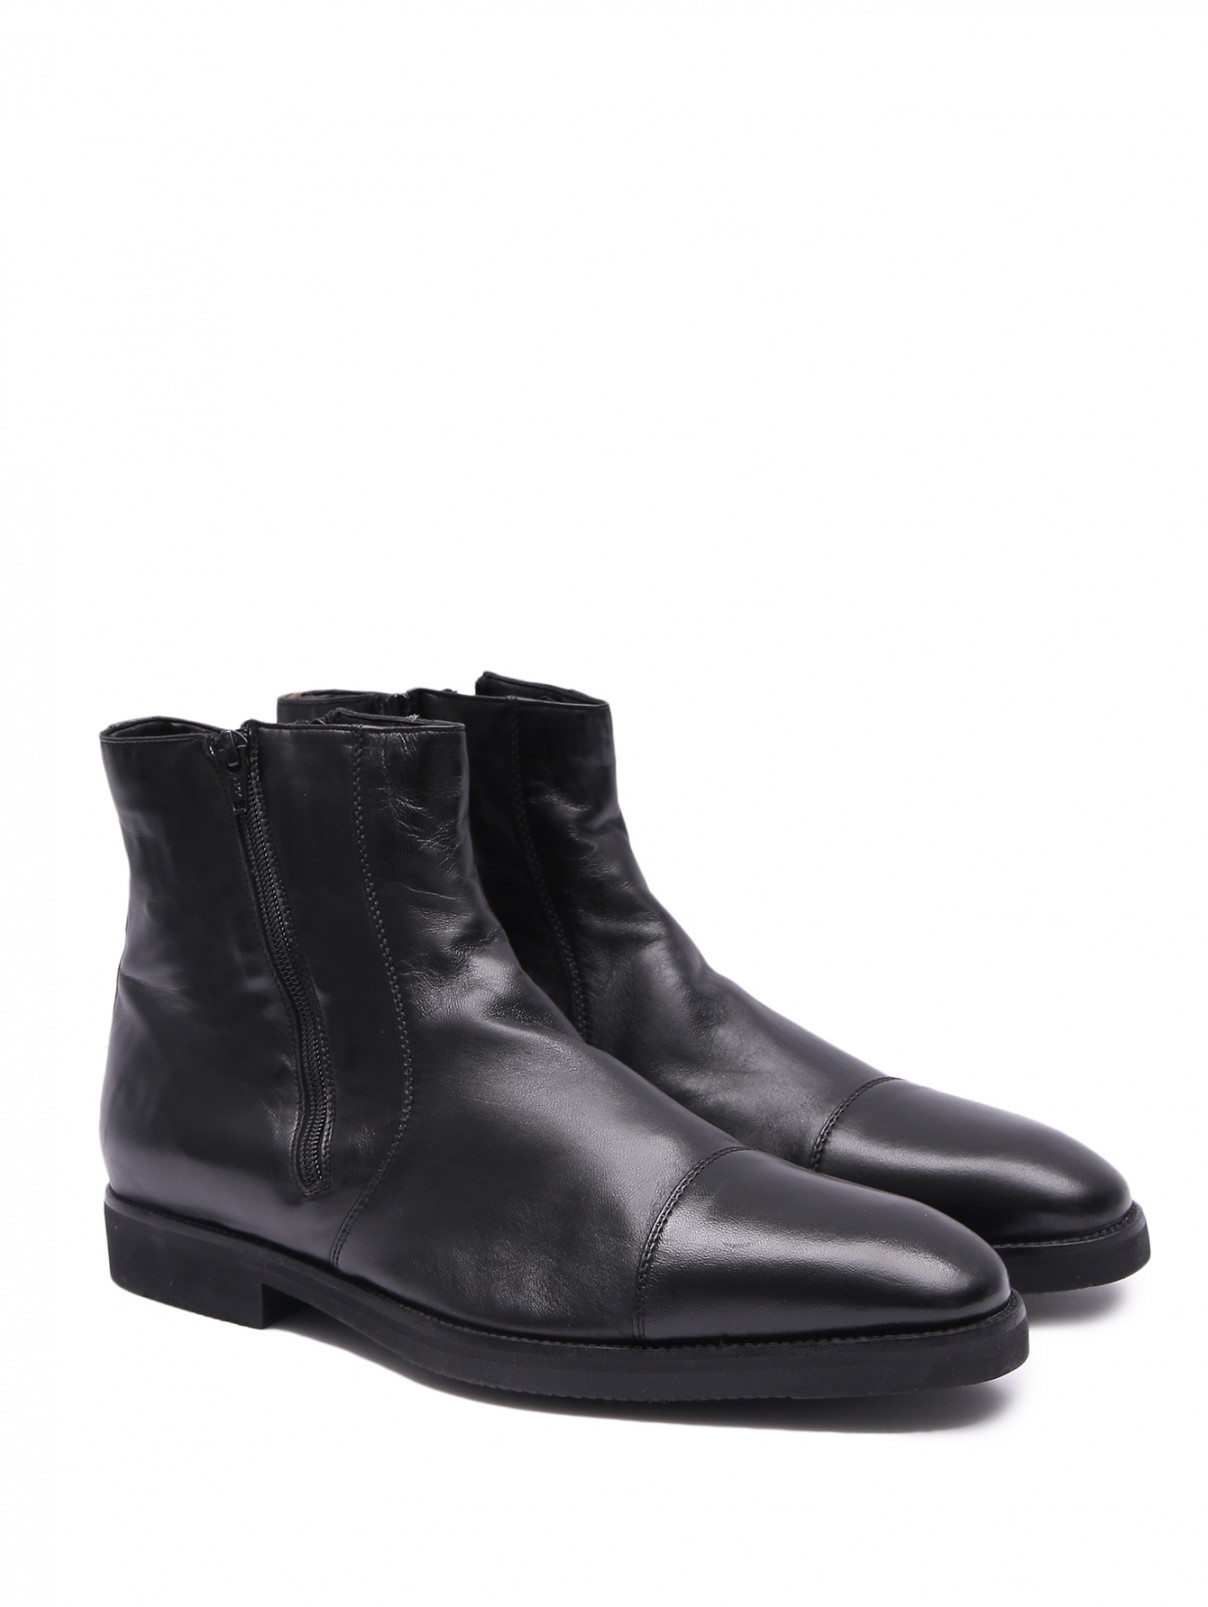 Утепленные ботинки из кожи Stemar  –  Общий вид  – Цвет:  Черный